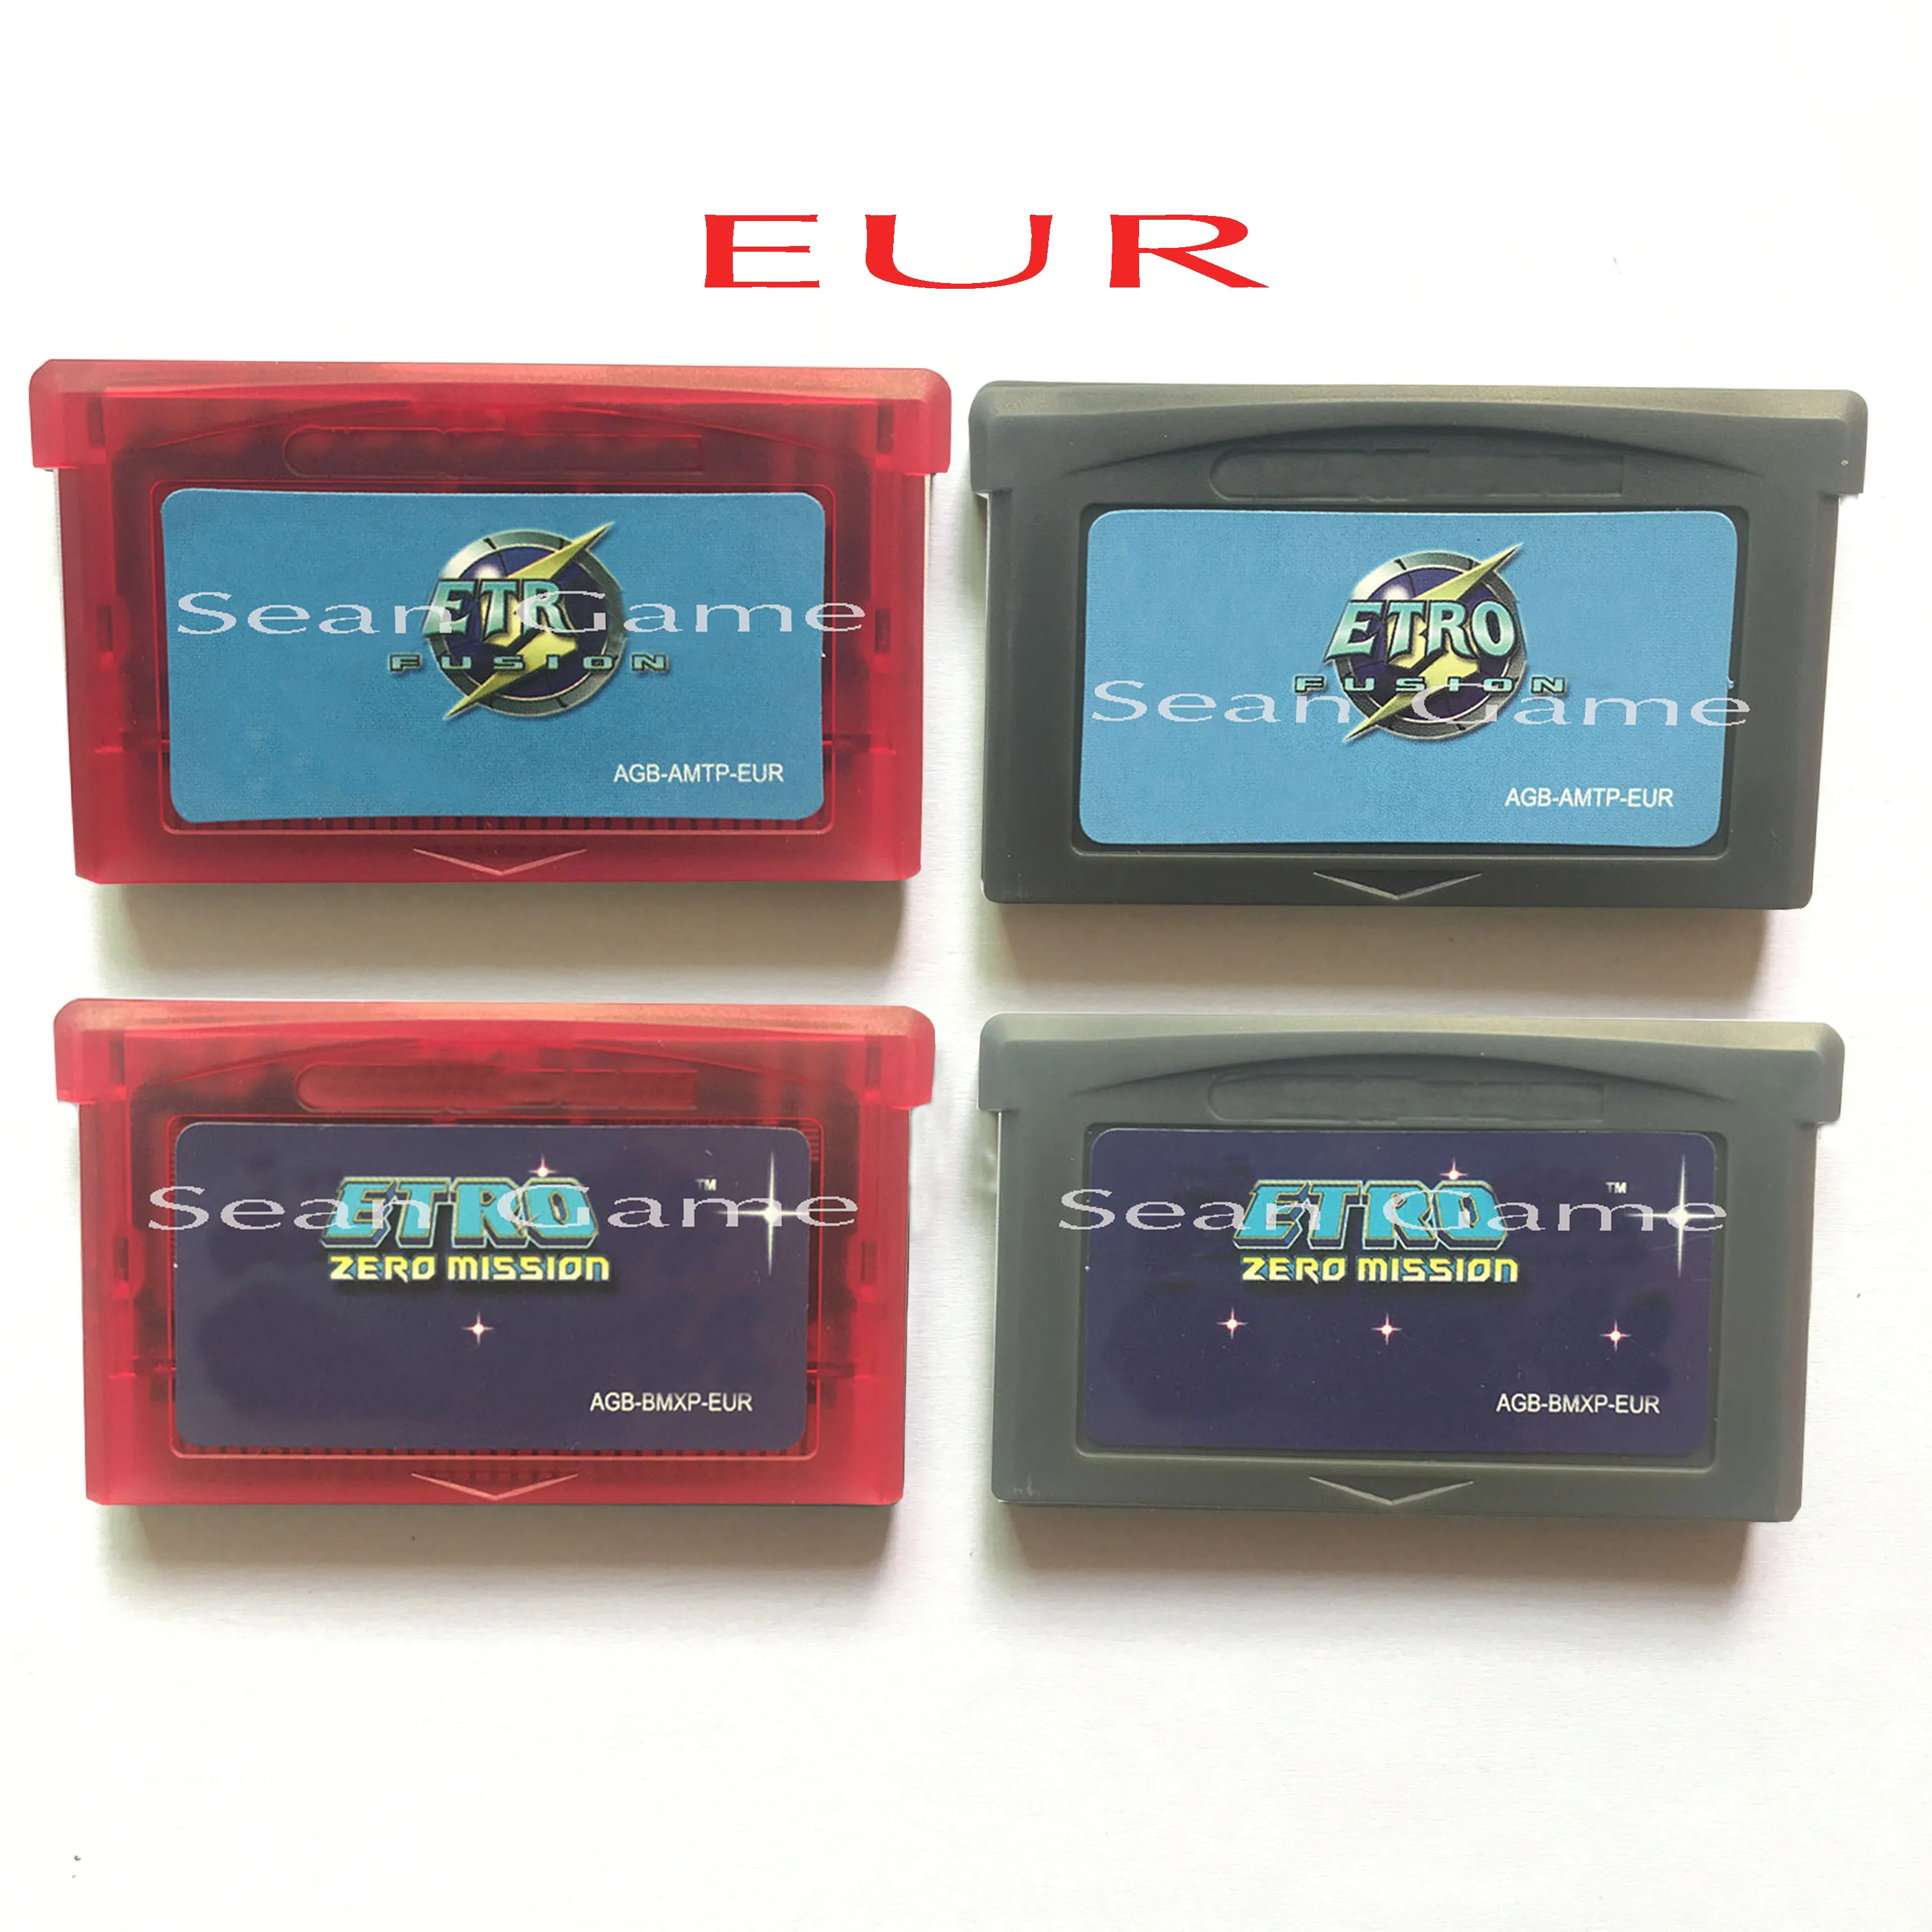 32-разрядная карта картриджа для портативной консоли EUR для видеоигр Etr Fusion / Zero Версия Misi, первая коллекция